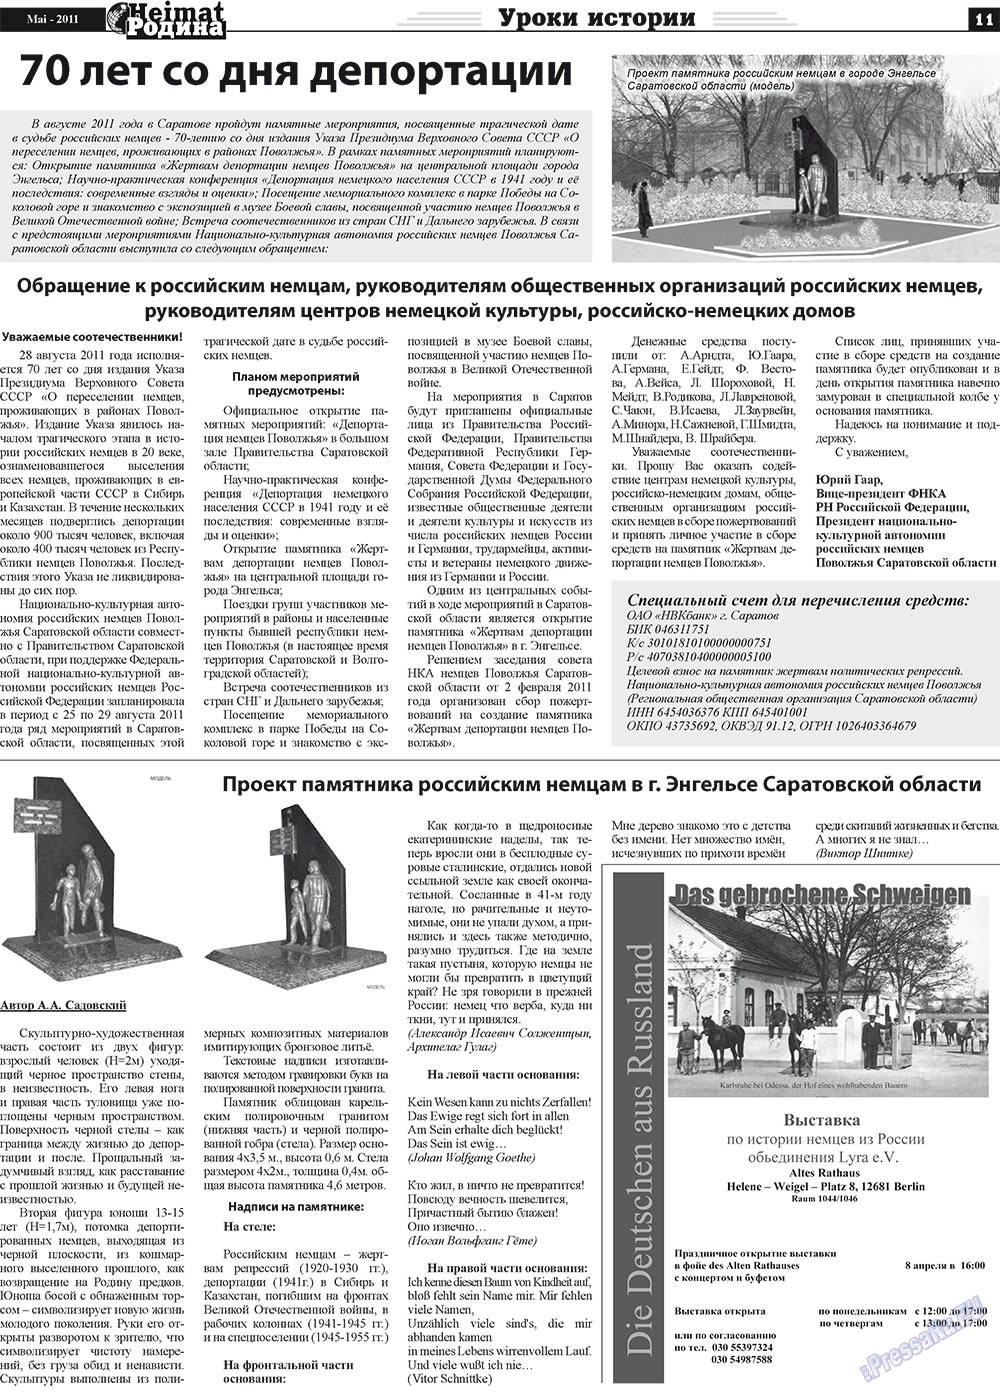 Heimat-Родина (газета). 2011 год, номер 5, стр. 11